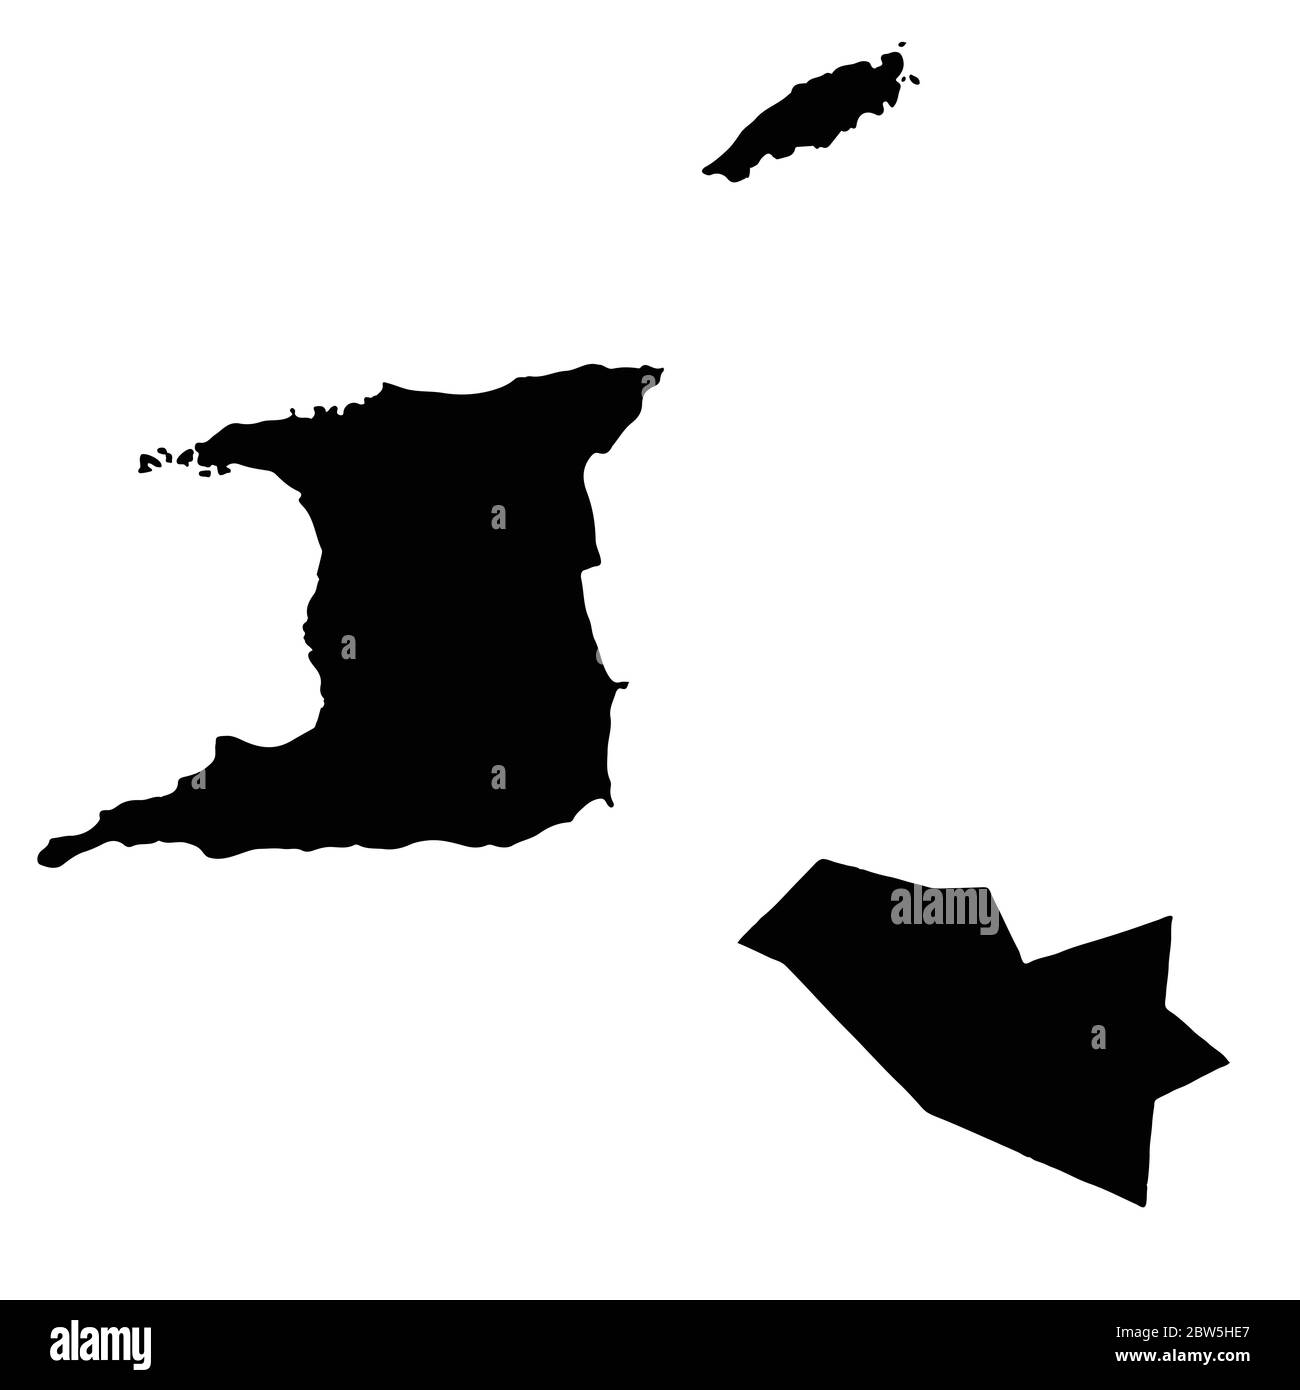 Mappa vettoriale Trinidad e Tobago e Porto di Spagna. Paese e capitale. Illustrazione vettoriale isolata. Nero su sfondo bianco. Illustrazione EPS 10. Illustrazione Vettoriale